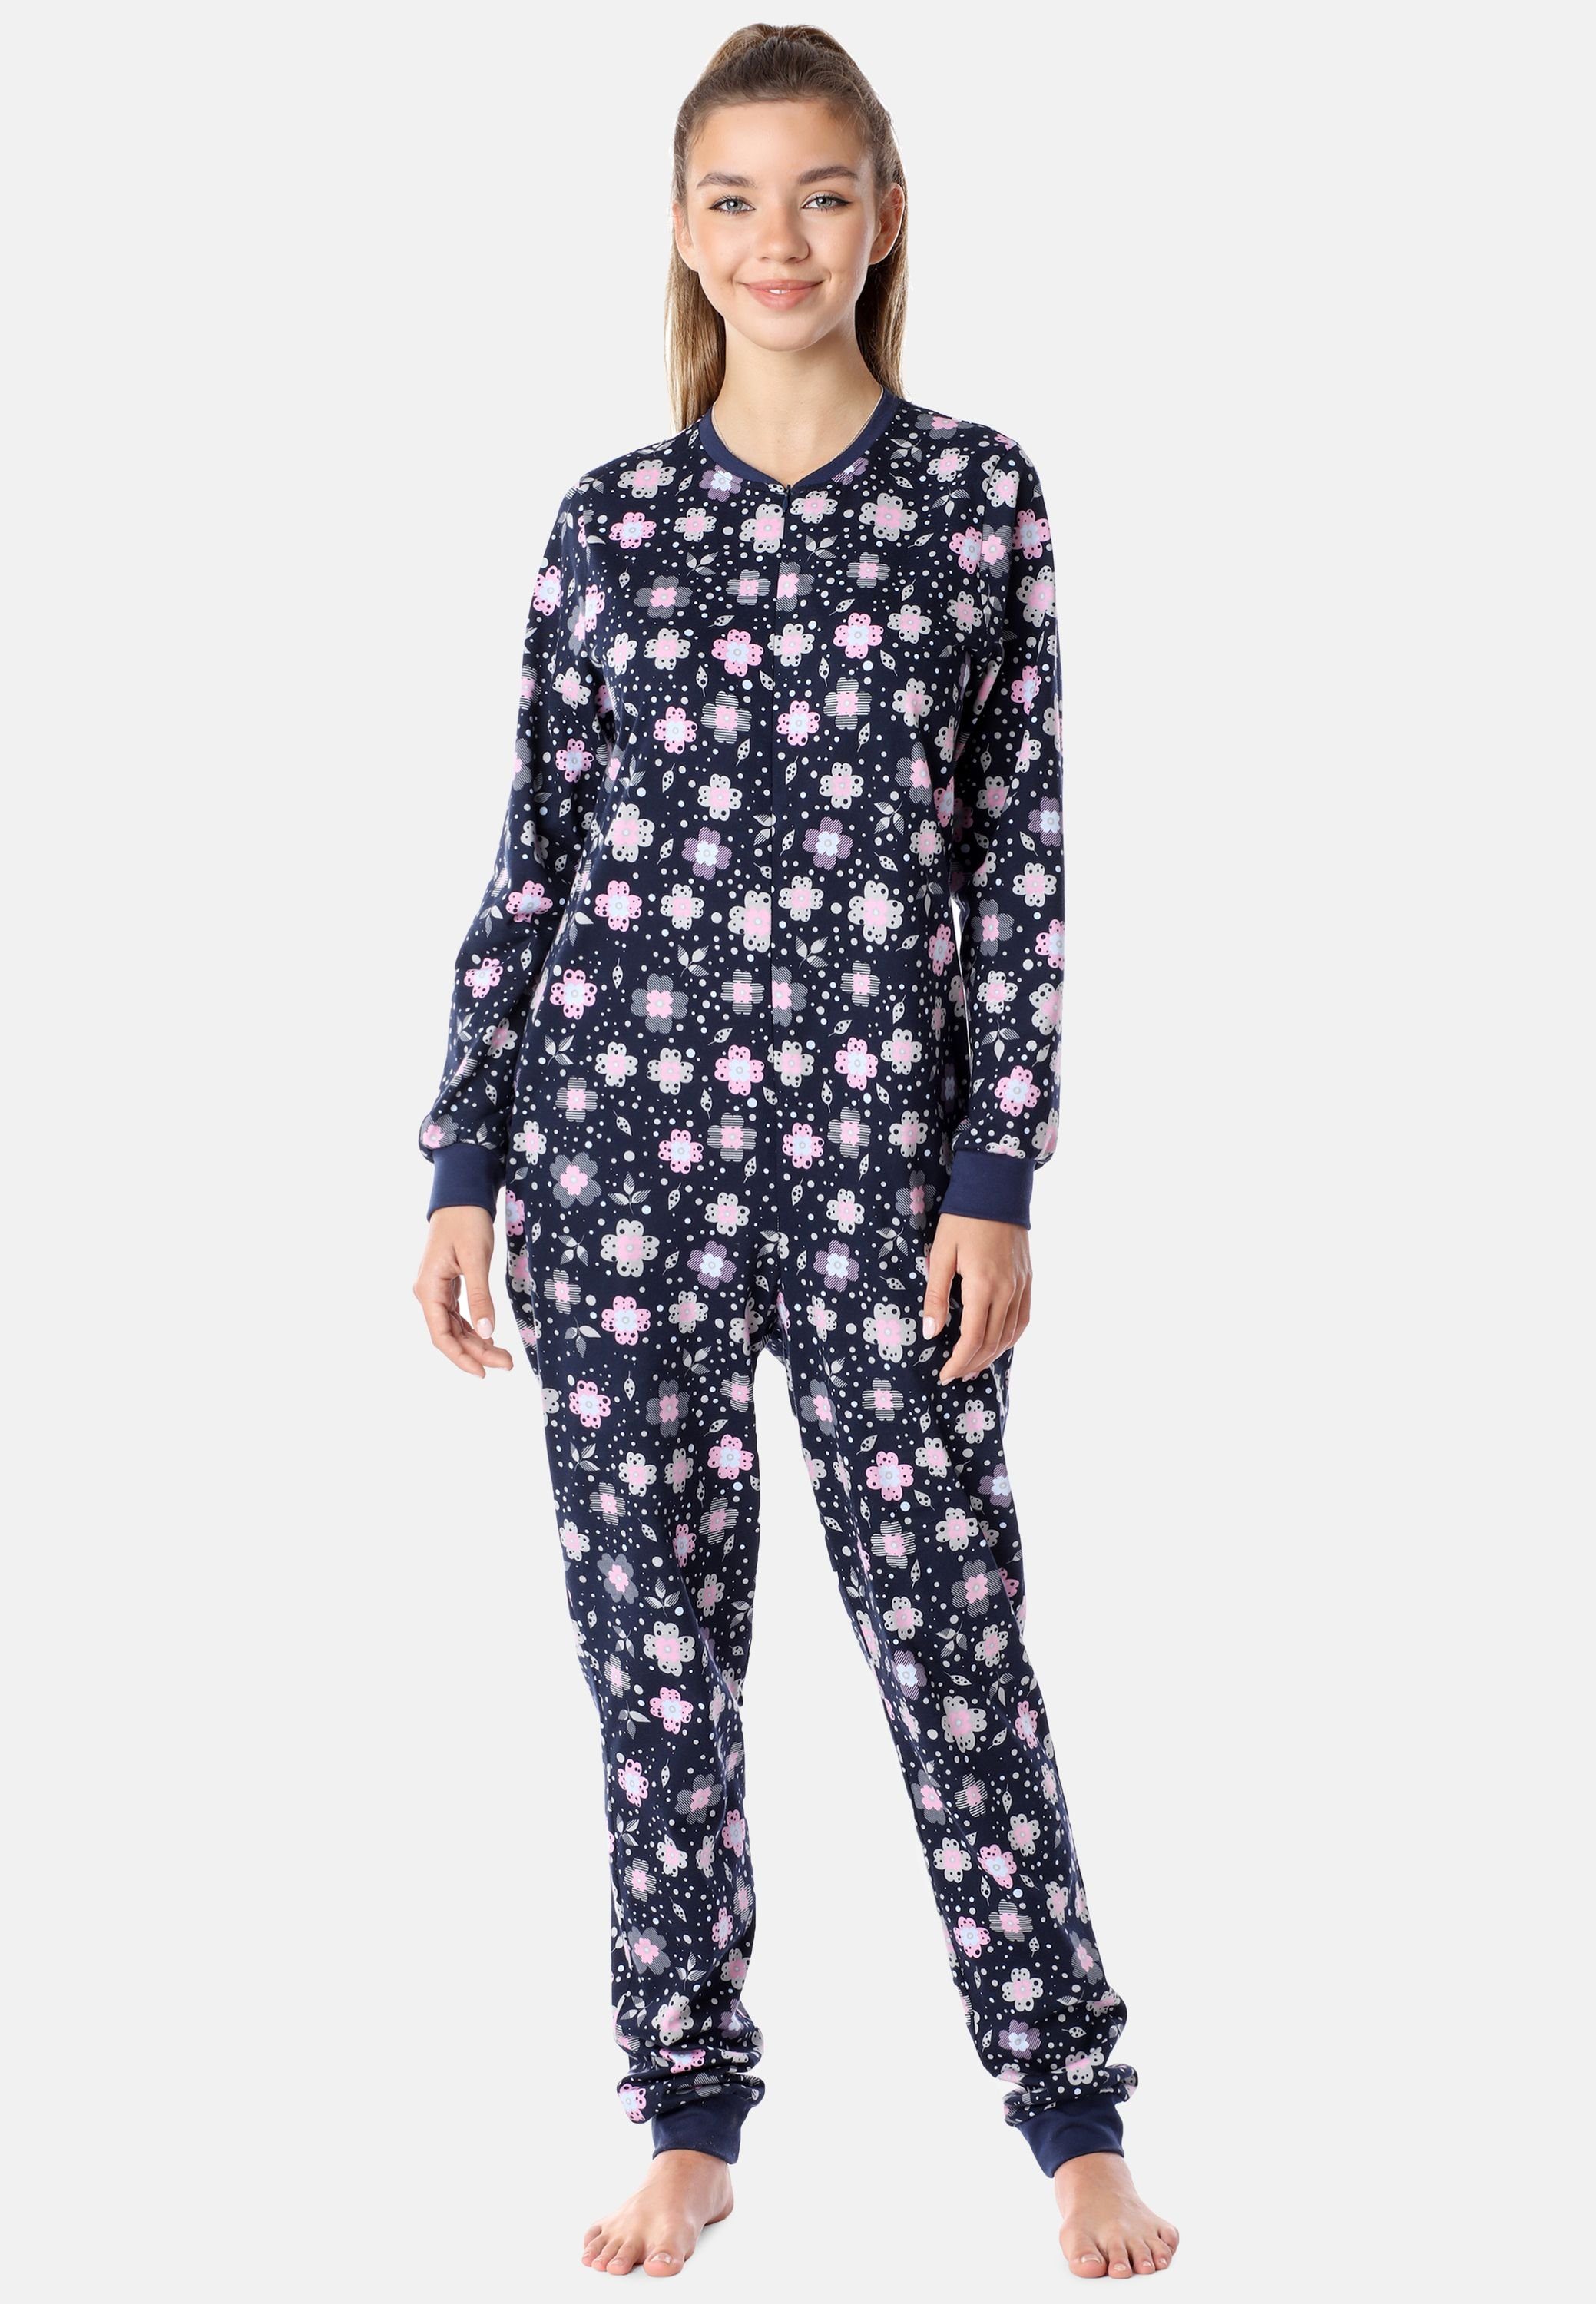 Mädchen Schlafanzug Schlafanzug MS10-235 Style Schlafoverall Jugend Merry Marine/Blumen